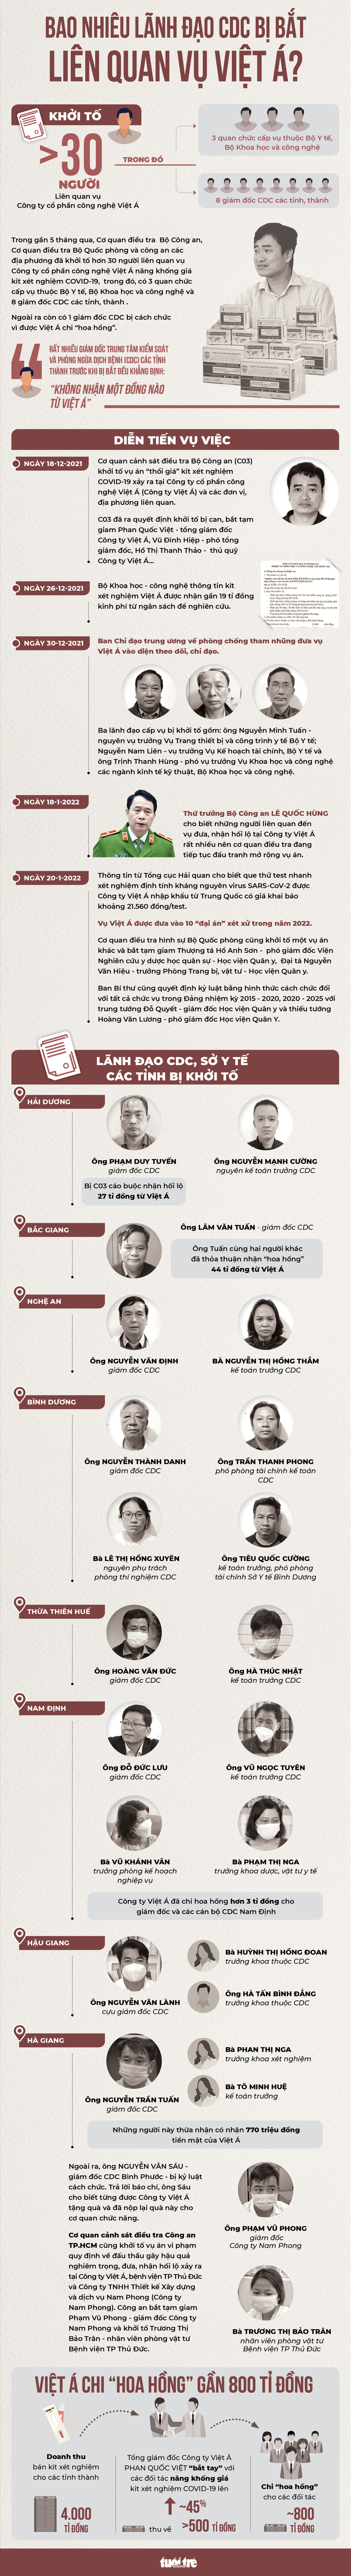 Gần 5 tháng qua, bao nhiêu lãnh đạo CDC bị bắt liên quan vụ Việt Á? - Ảnh 1.